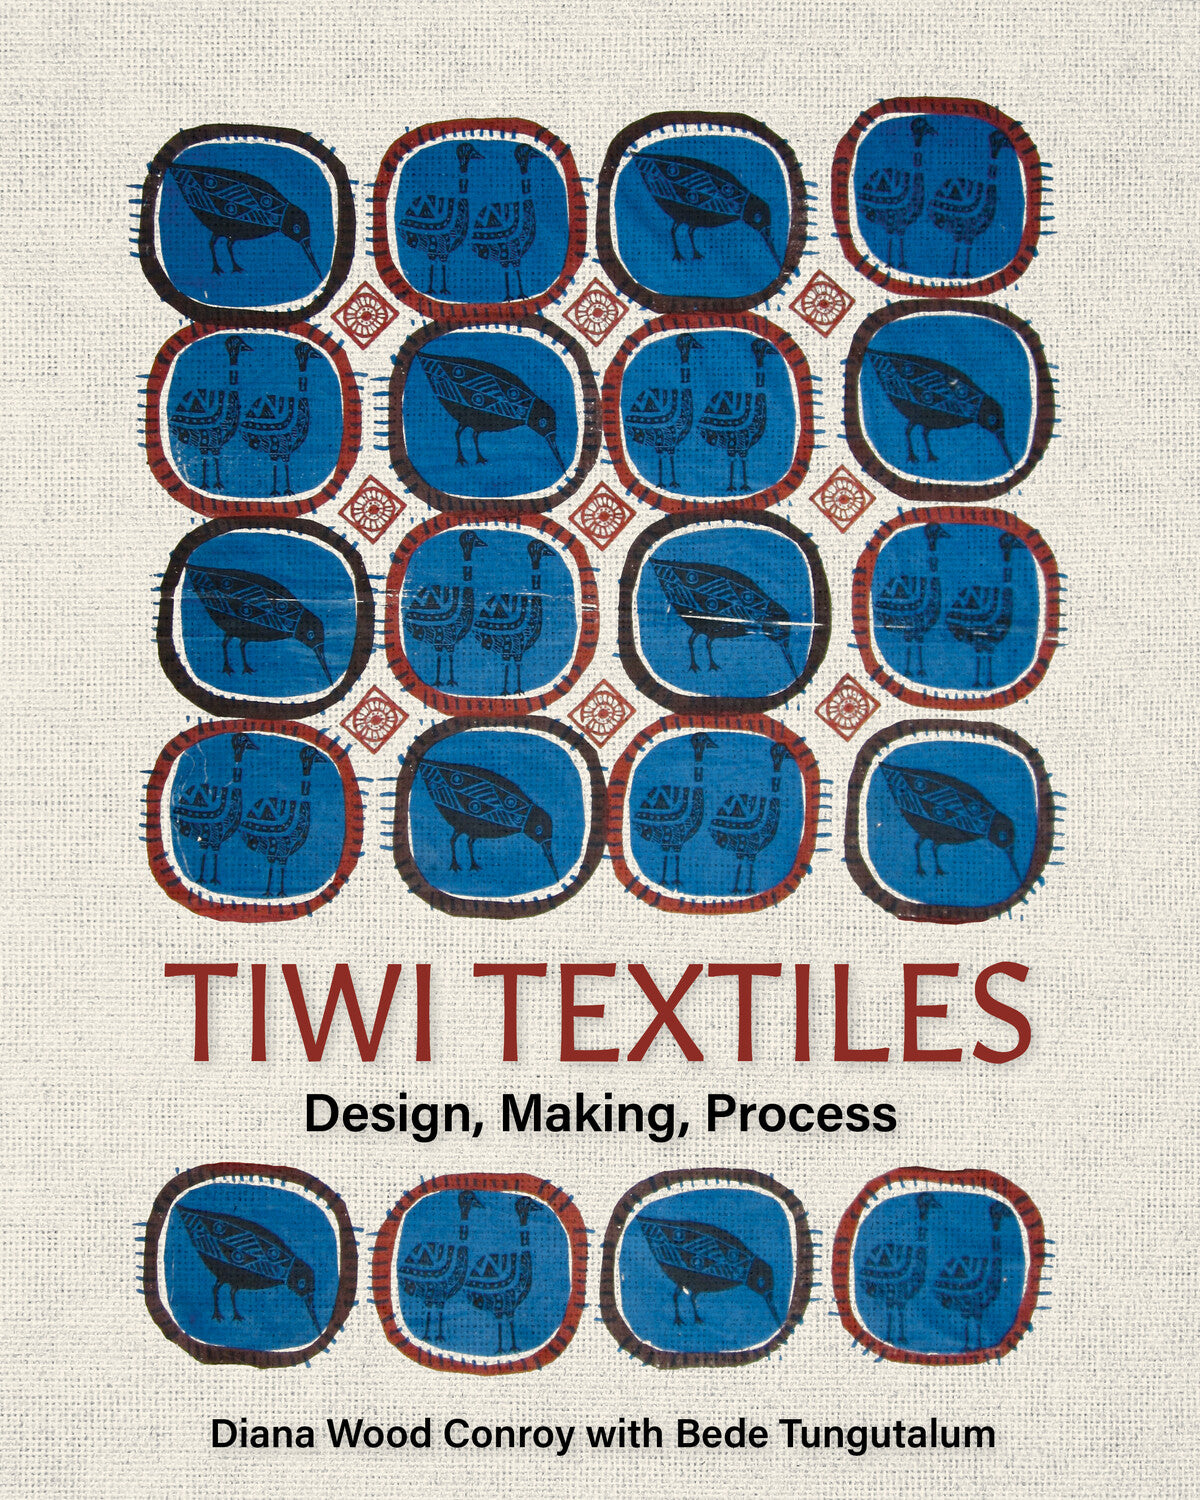 Tiwi Textiles